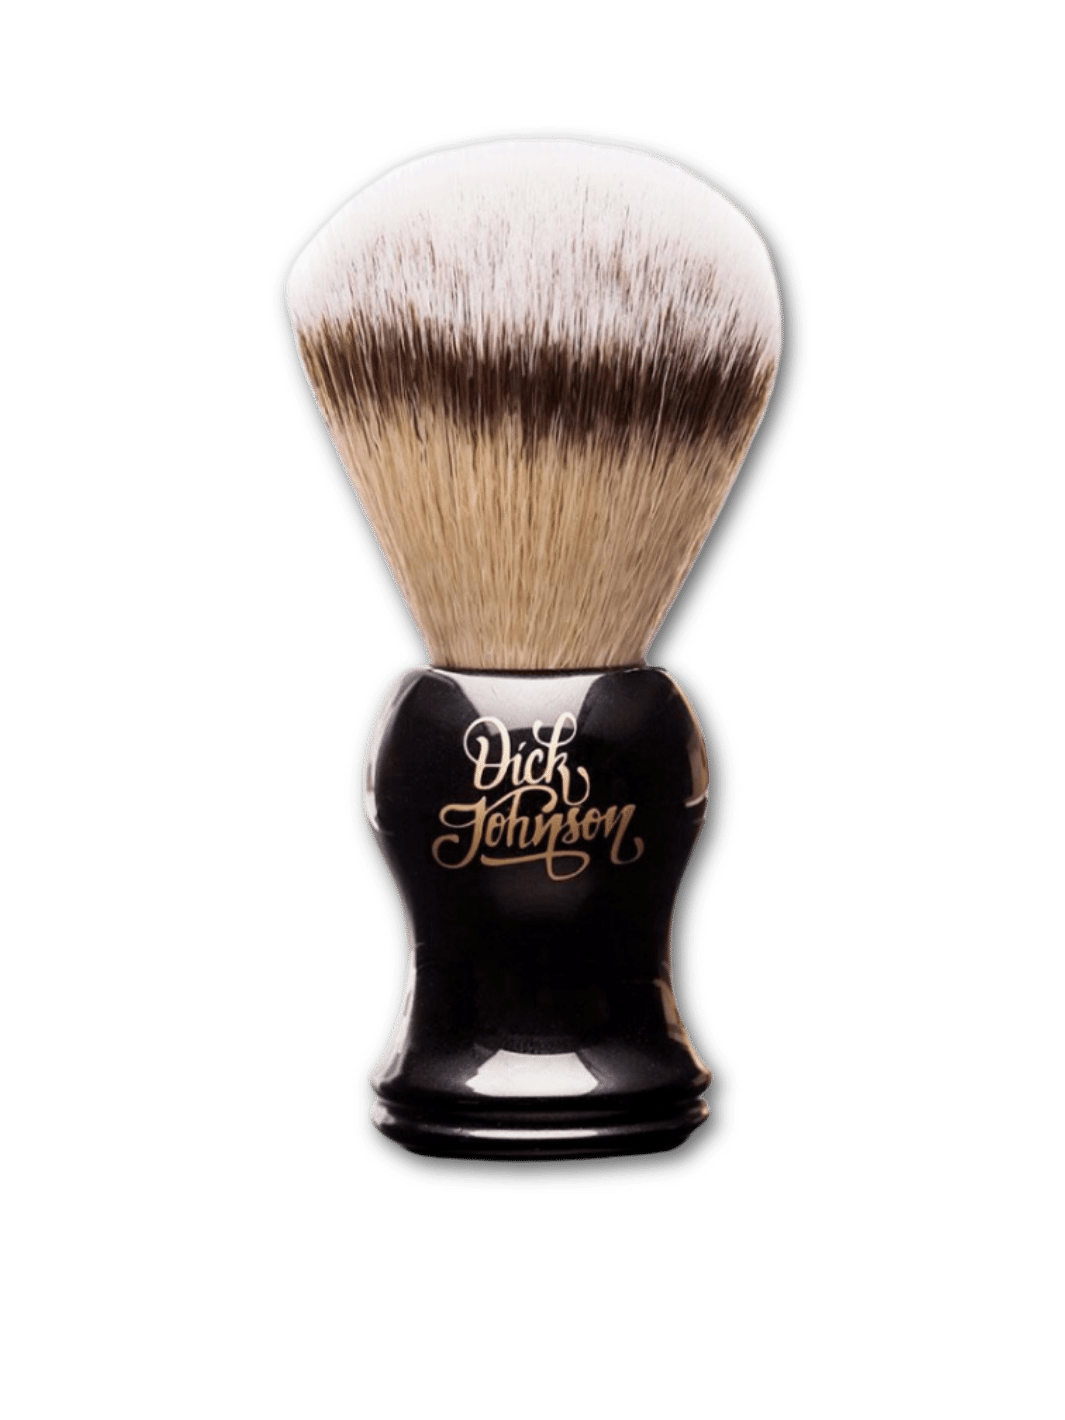 Eleganter Dick Johnson Rasierpinsel mit weichen Faserborsten, verfügbar bei Phullcutz für eine sanfte Rasur.